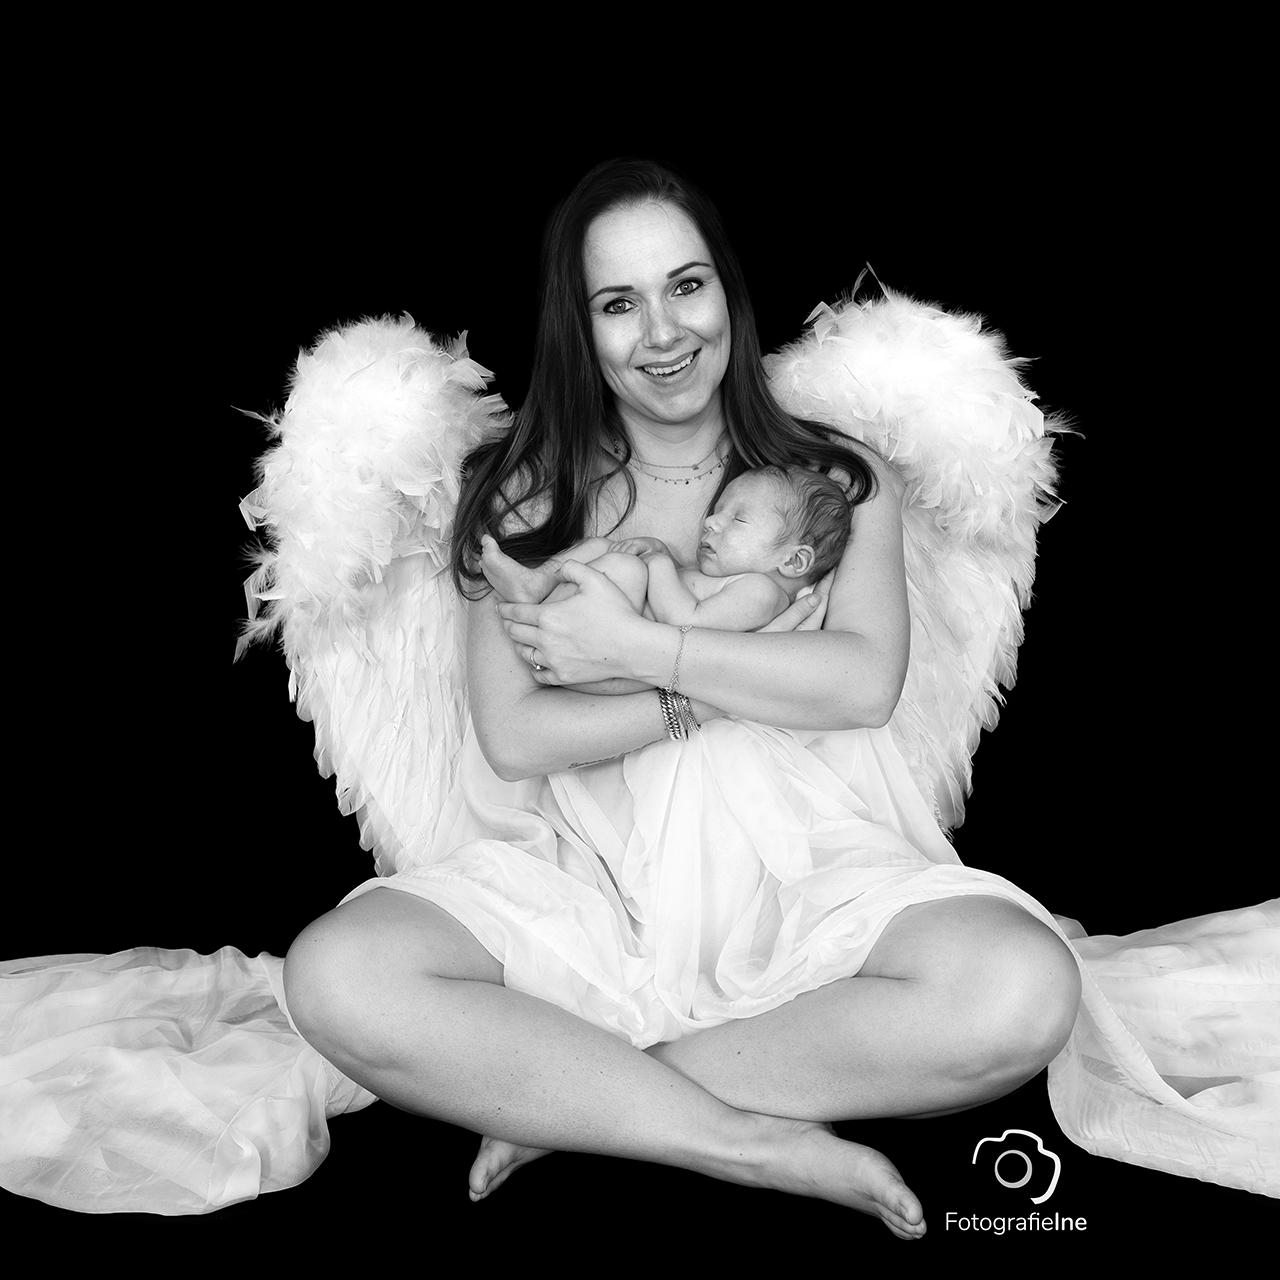 Fotografie Ine newborn mama met vleugels engelenvleugels fotograaf Boekel Ine van Boerdonk